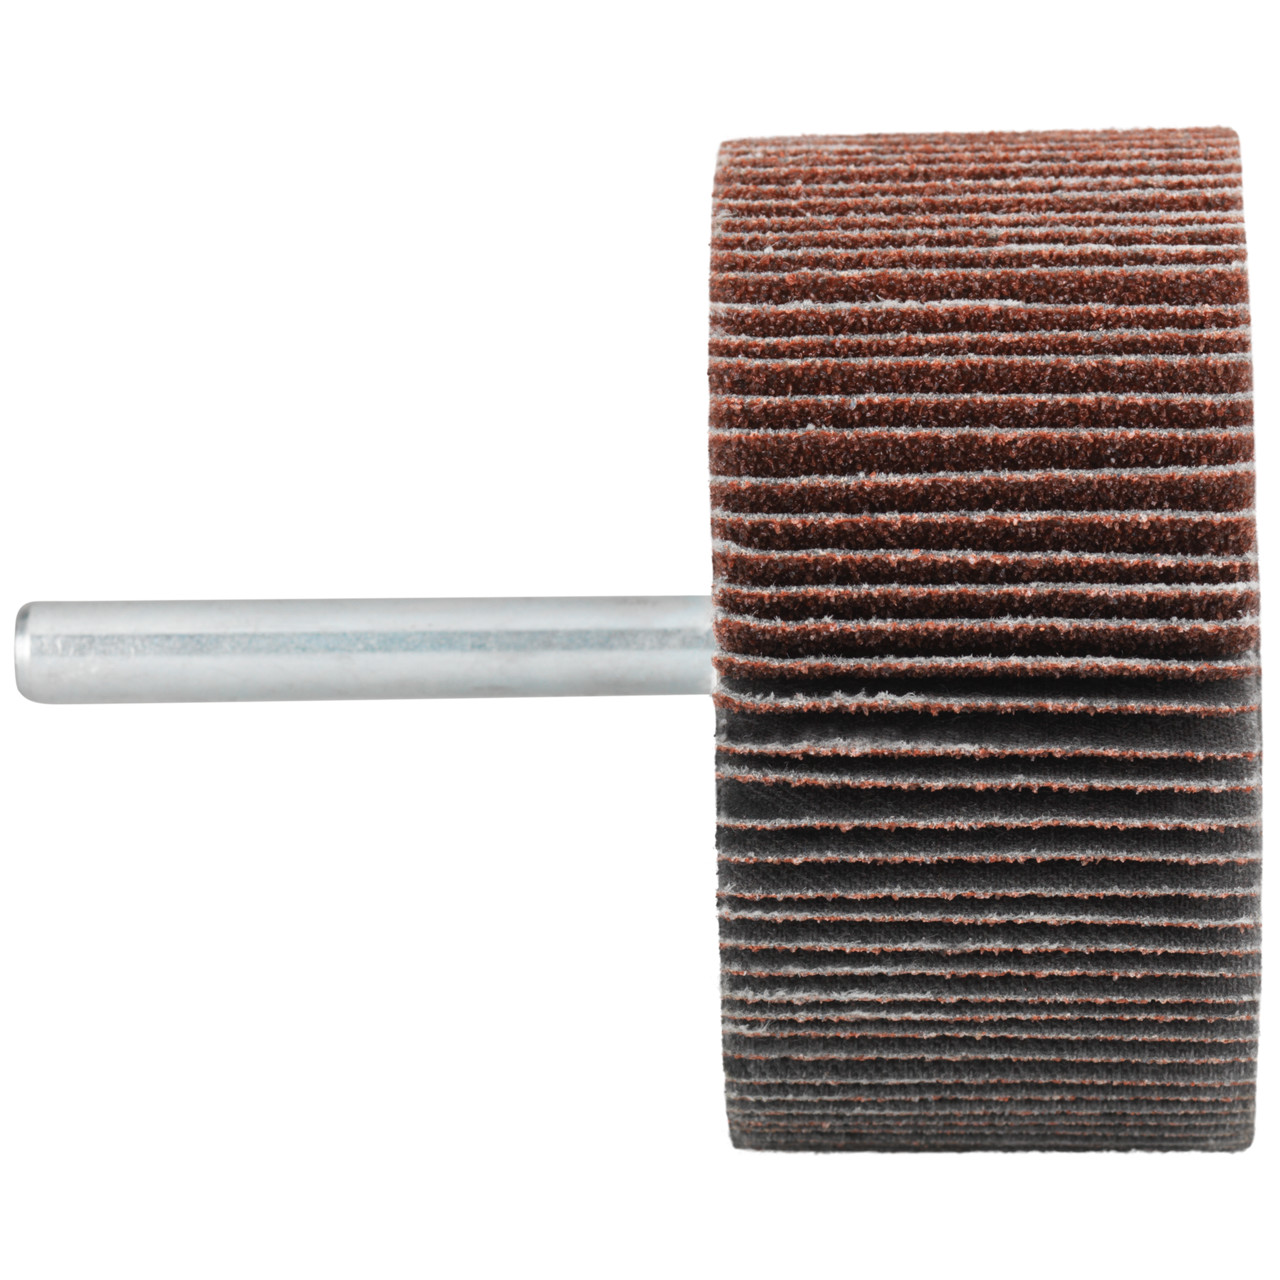 Tyrolit A-P01 C X Pennen DxD 50x30 Voor staal, roestvast staal en non-ferrometalen, P60, vorm: 52LA, Art. 816940